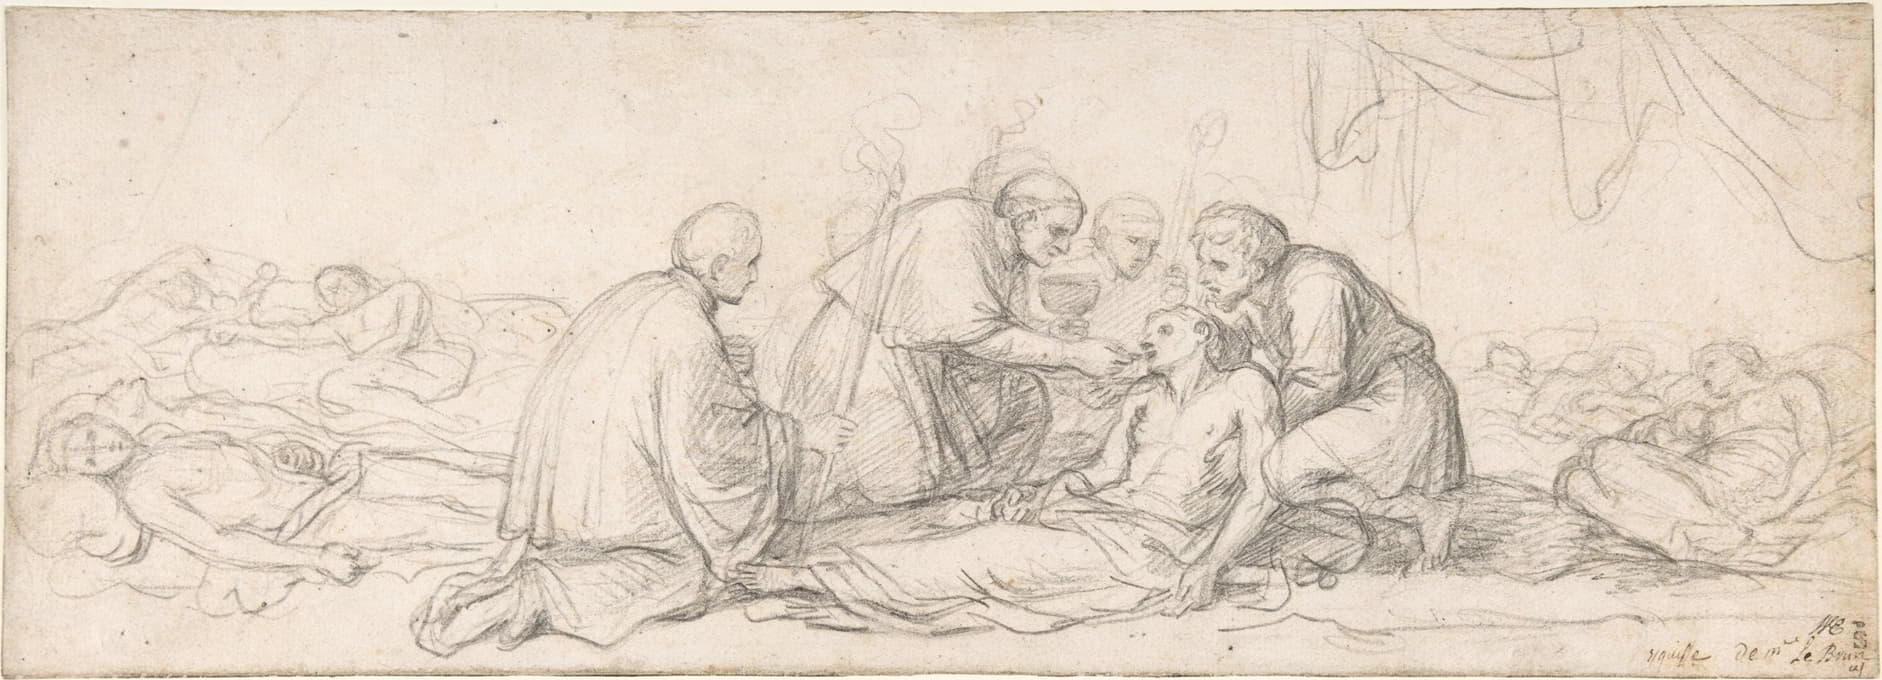 圣查尔斯·博罗密欧向遭受瘟疫侵袭的人进行圣餐